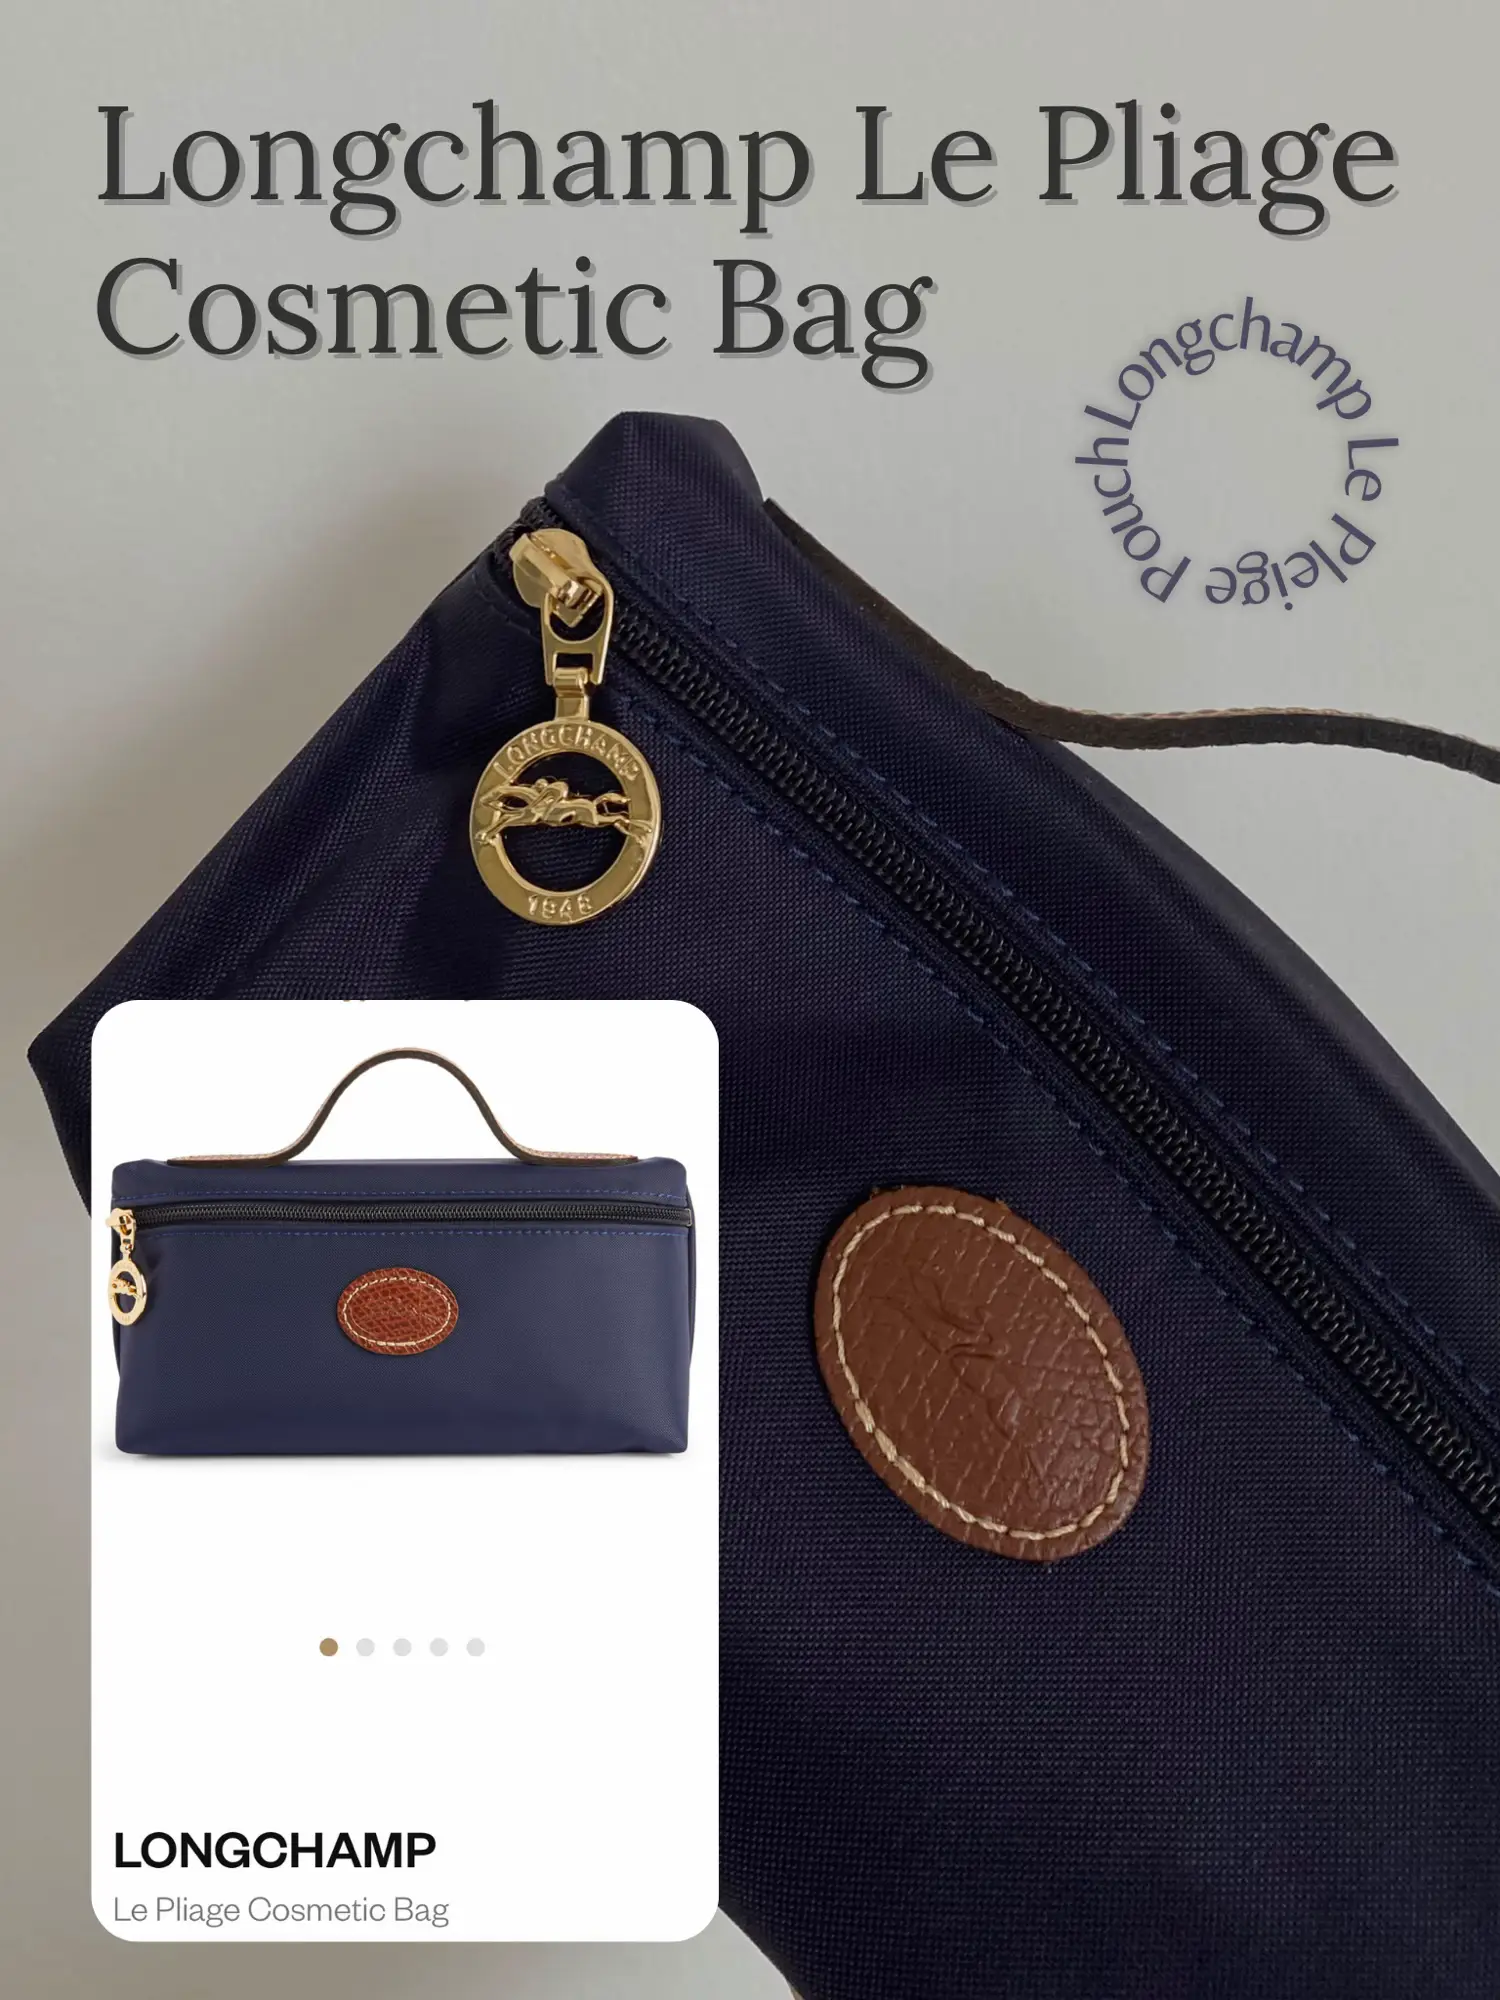 Longchamp Le Pliage Cosmetic Bag, Bag Review